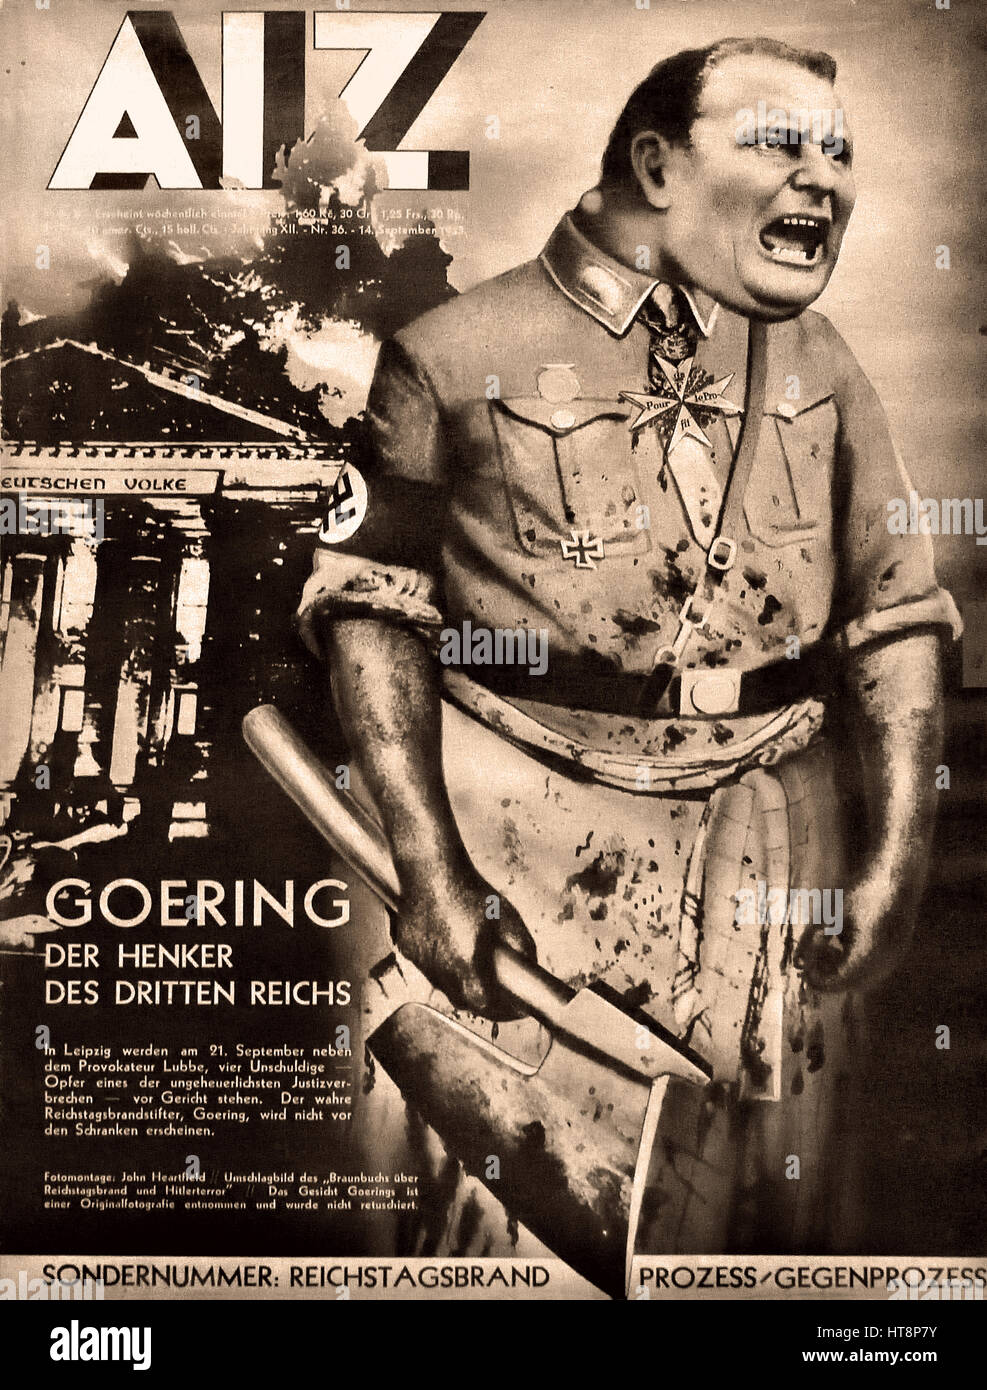 AIZ Goering der Henker des Dritten Reichs - Goering il carnefice macellaio ( ) del Terzo Reich di Adolf Hitler - La Germania Nazista Berlino Seconda guerra mondiale Foto Stock